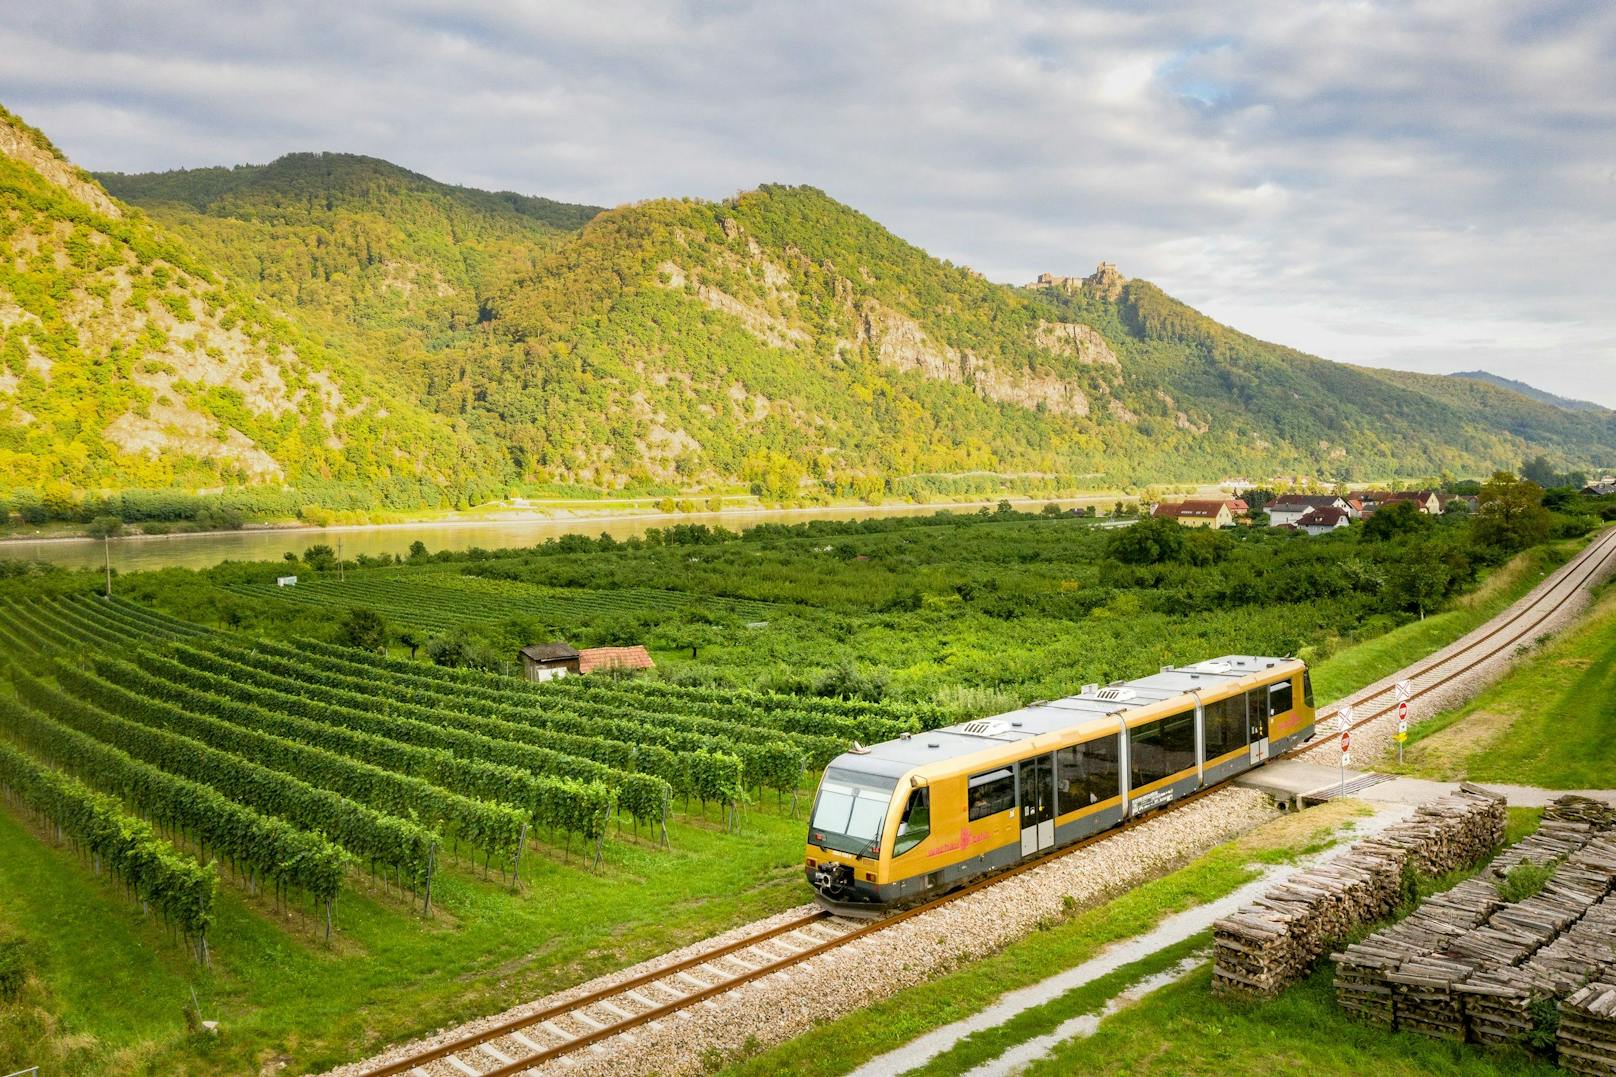 Die Wachaubahn auf ihrem Weg durch die abwechslungsreiche Landschaft des weltbekannten Weinbaugebiets Wachau